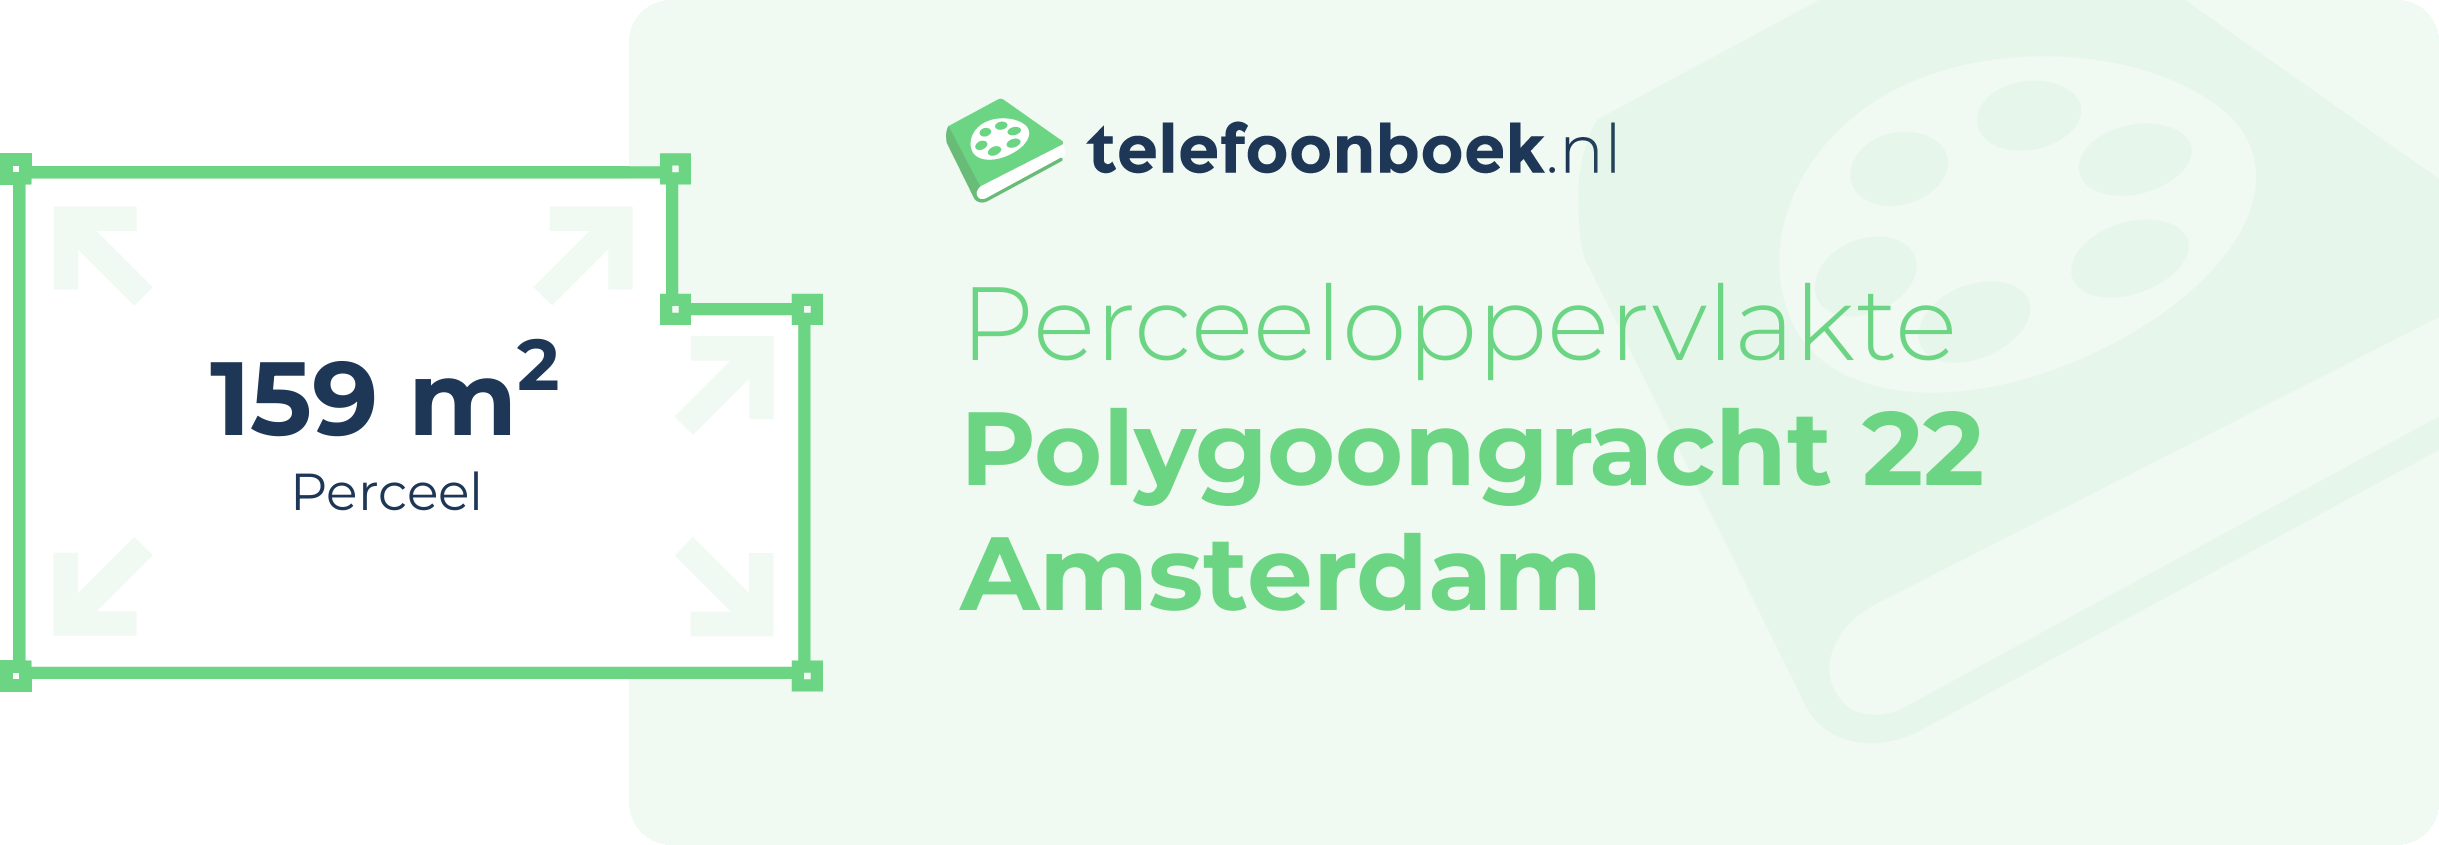 Perceeloppervlakte Polygoongracht 22 Amsterdam